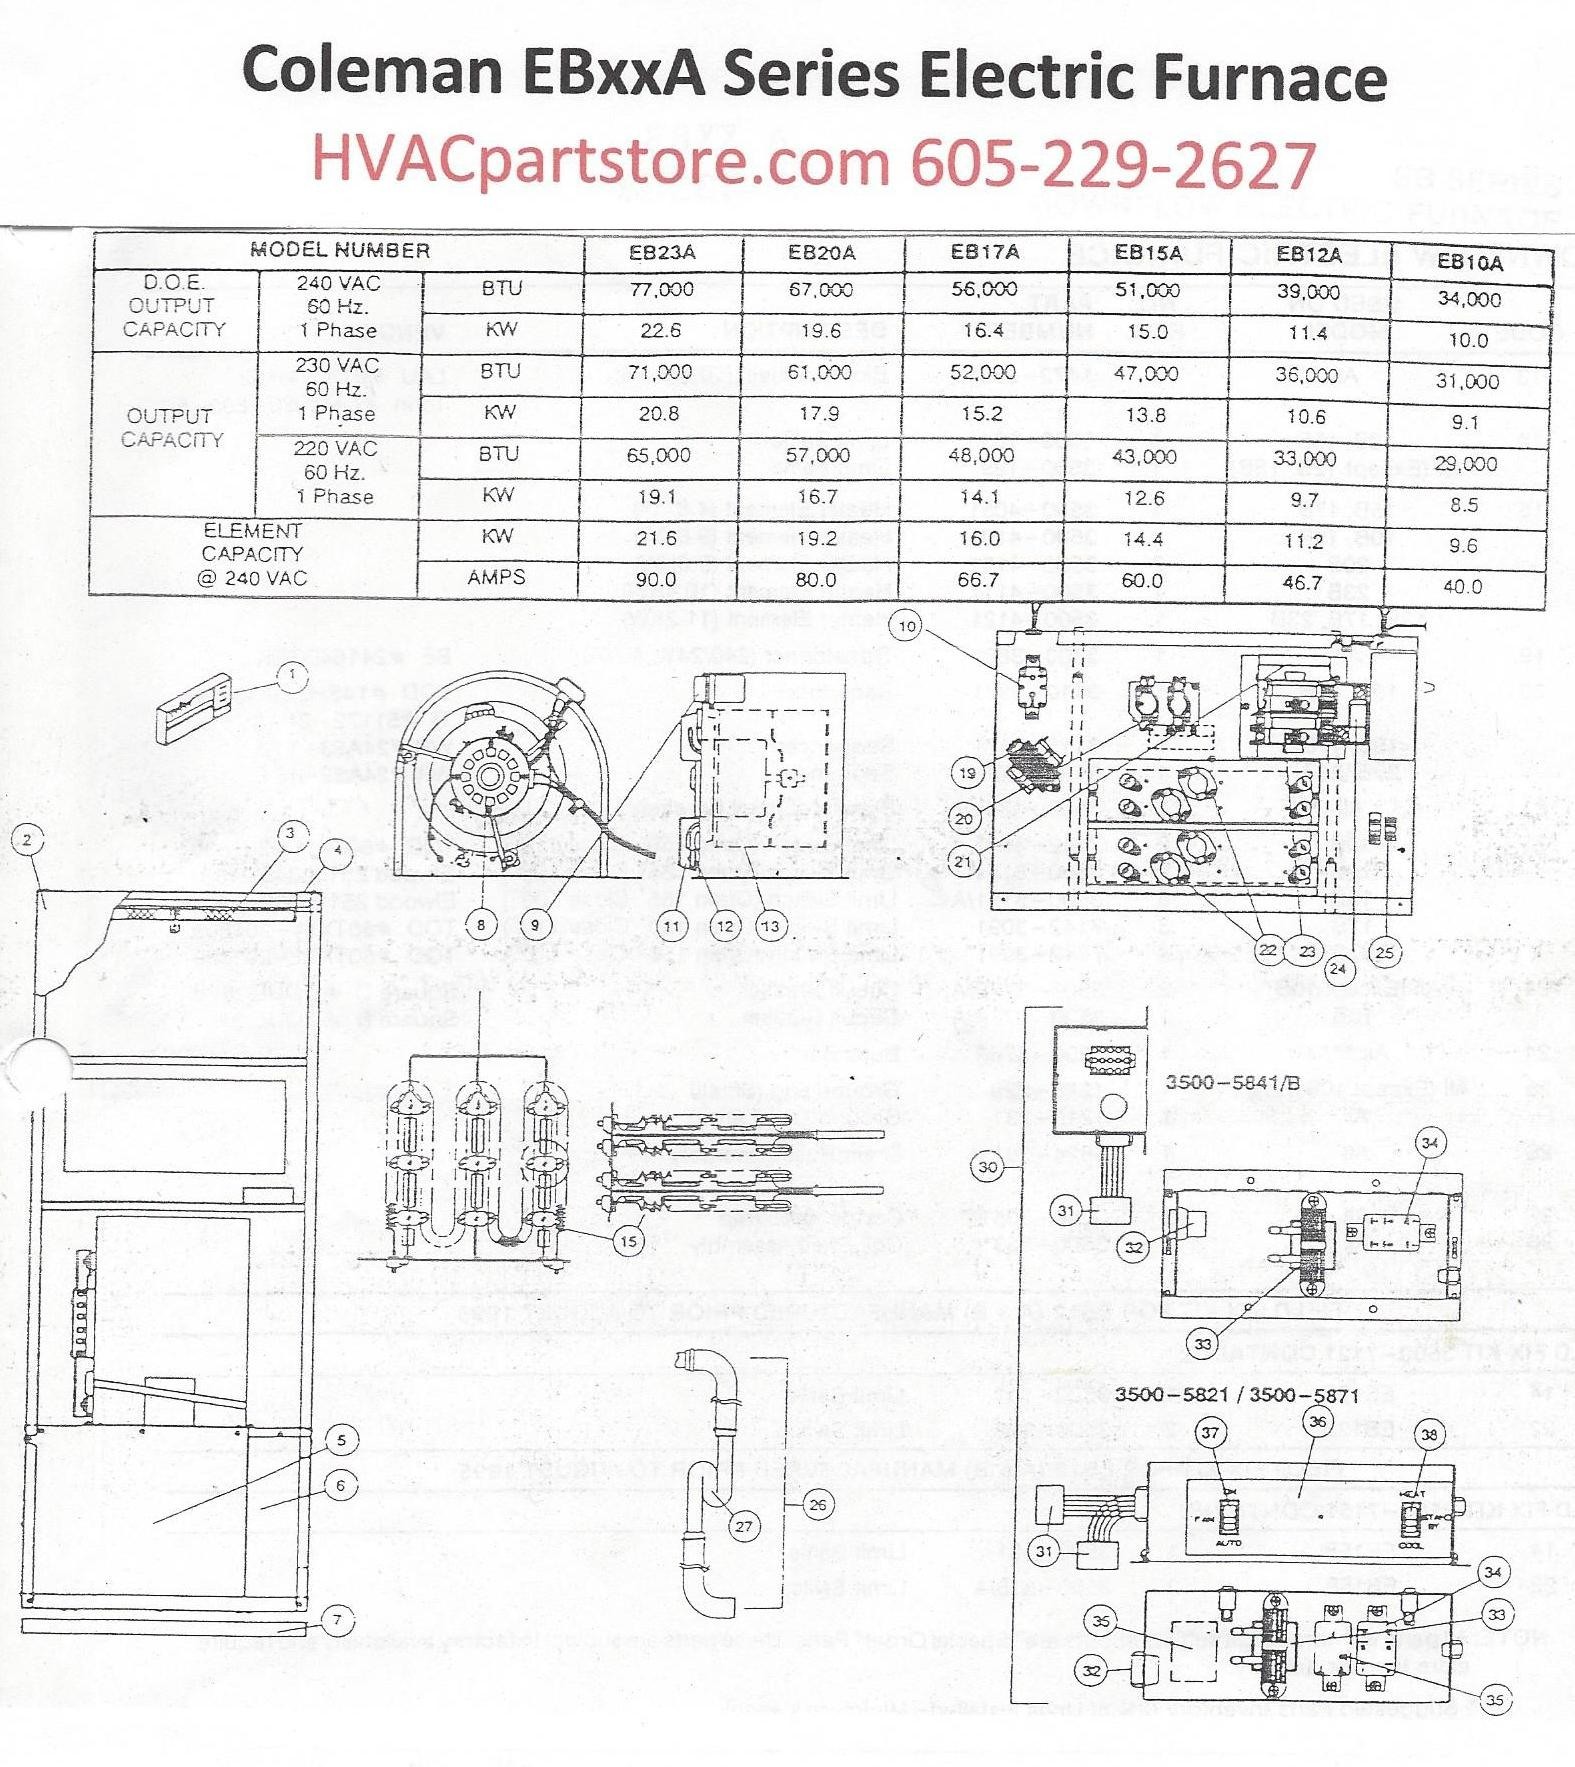 Heat Sequencer Wiring Diagram Heat Sequencer Wiring Diagram originalstylophone Of Heat Sequencer Wiring Diagram